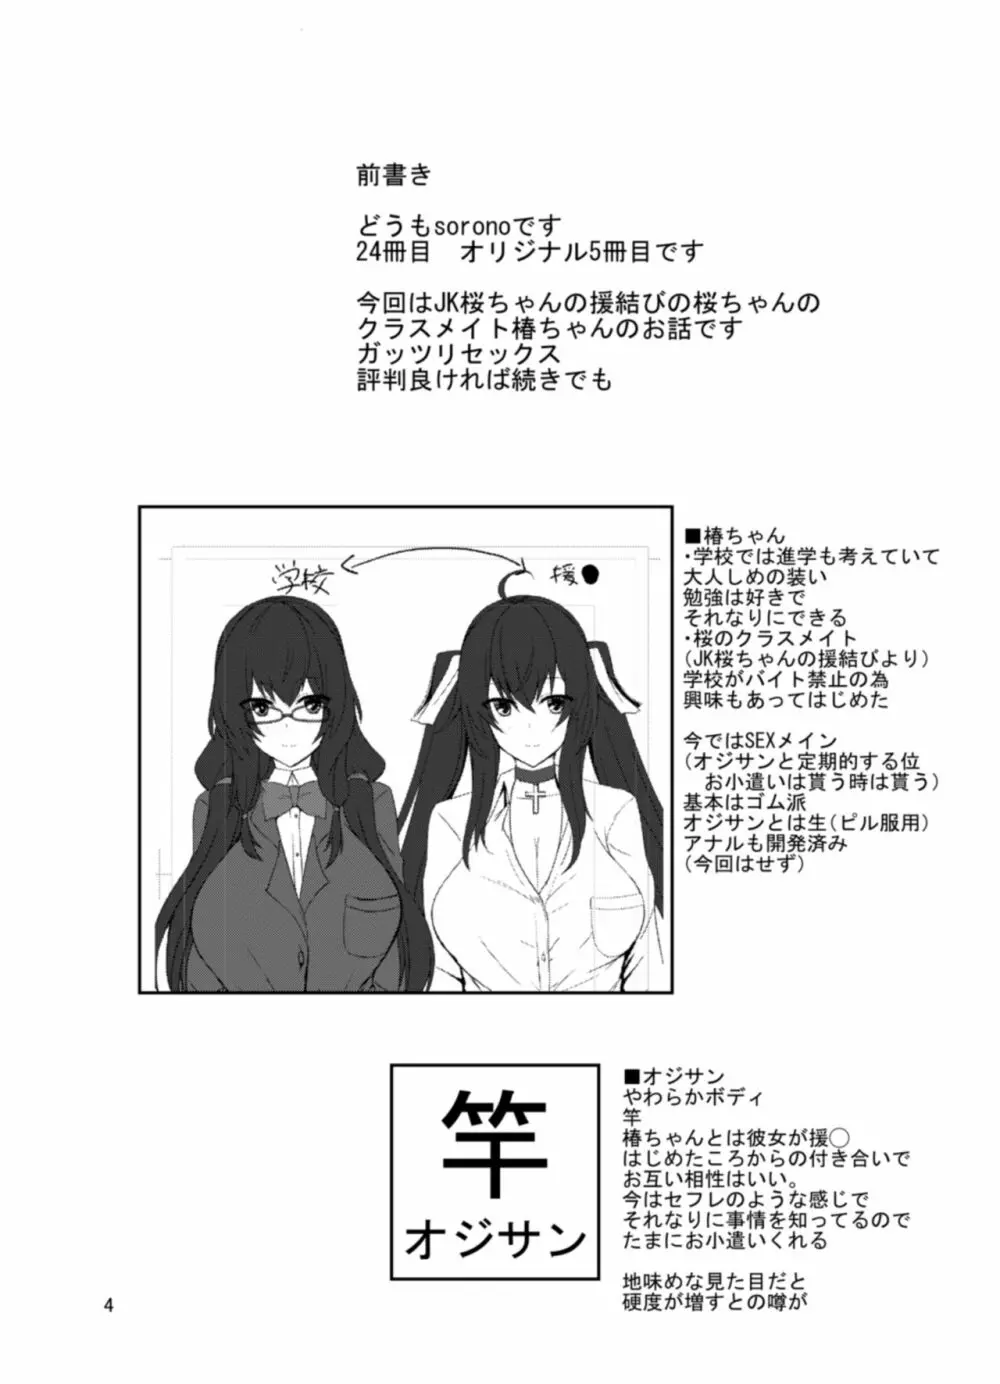 JK椿ちゃんの援結び - page4